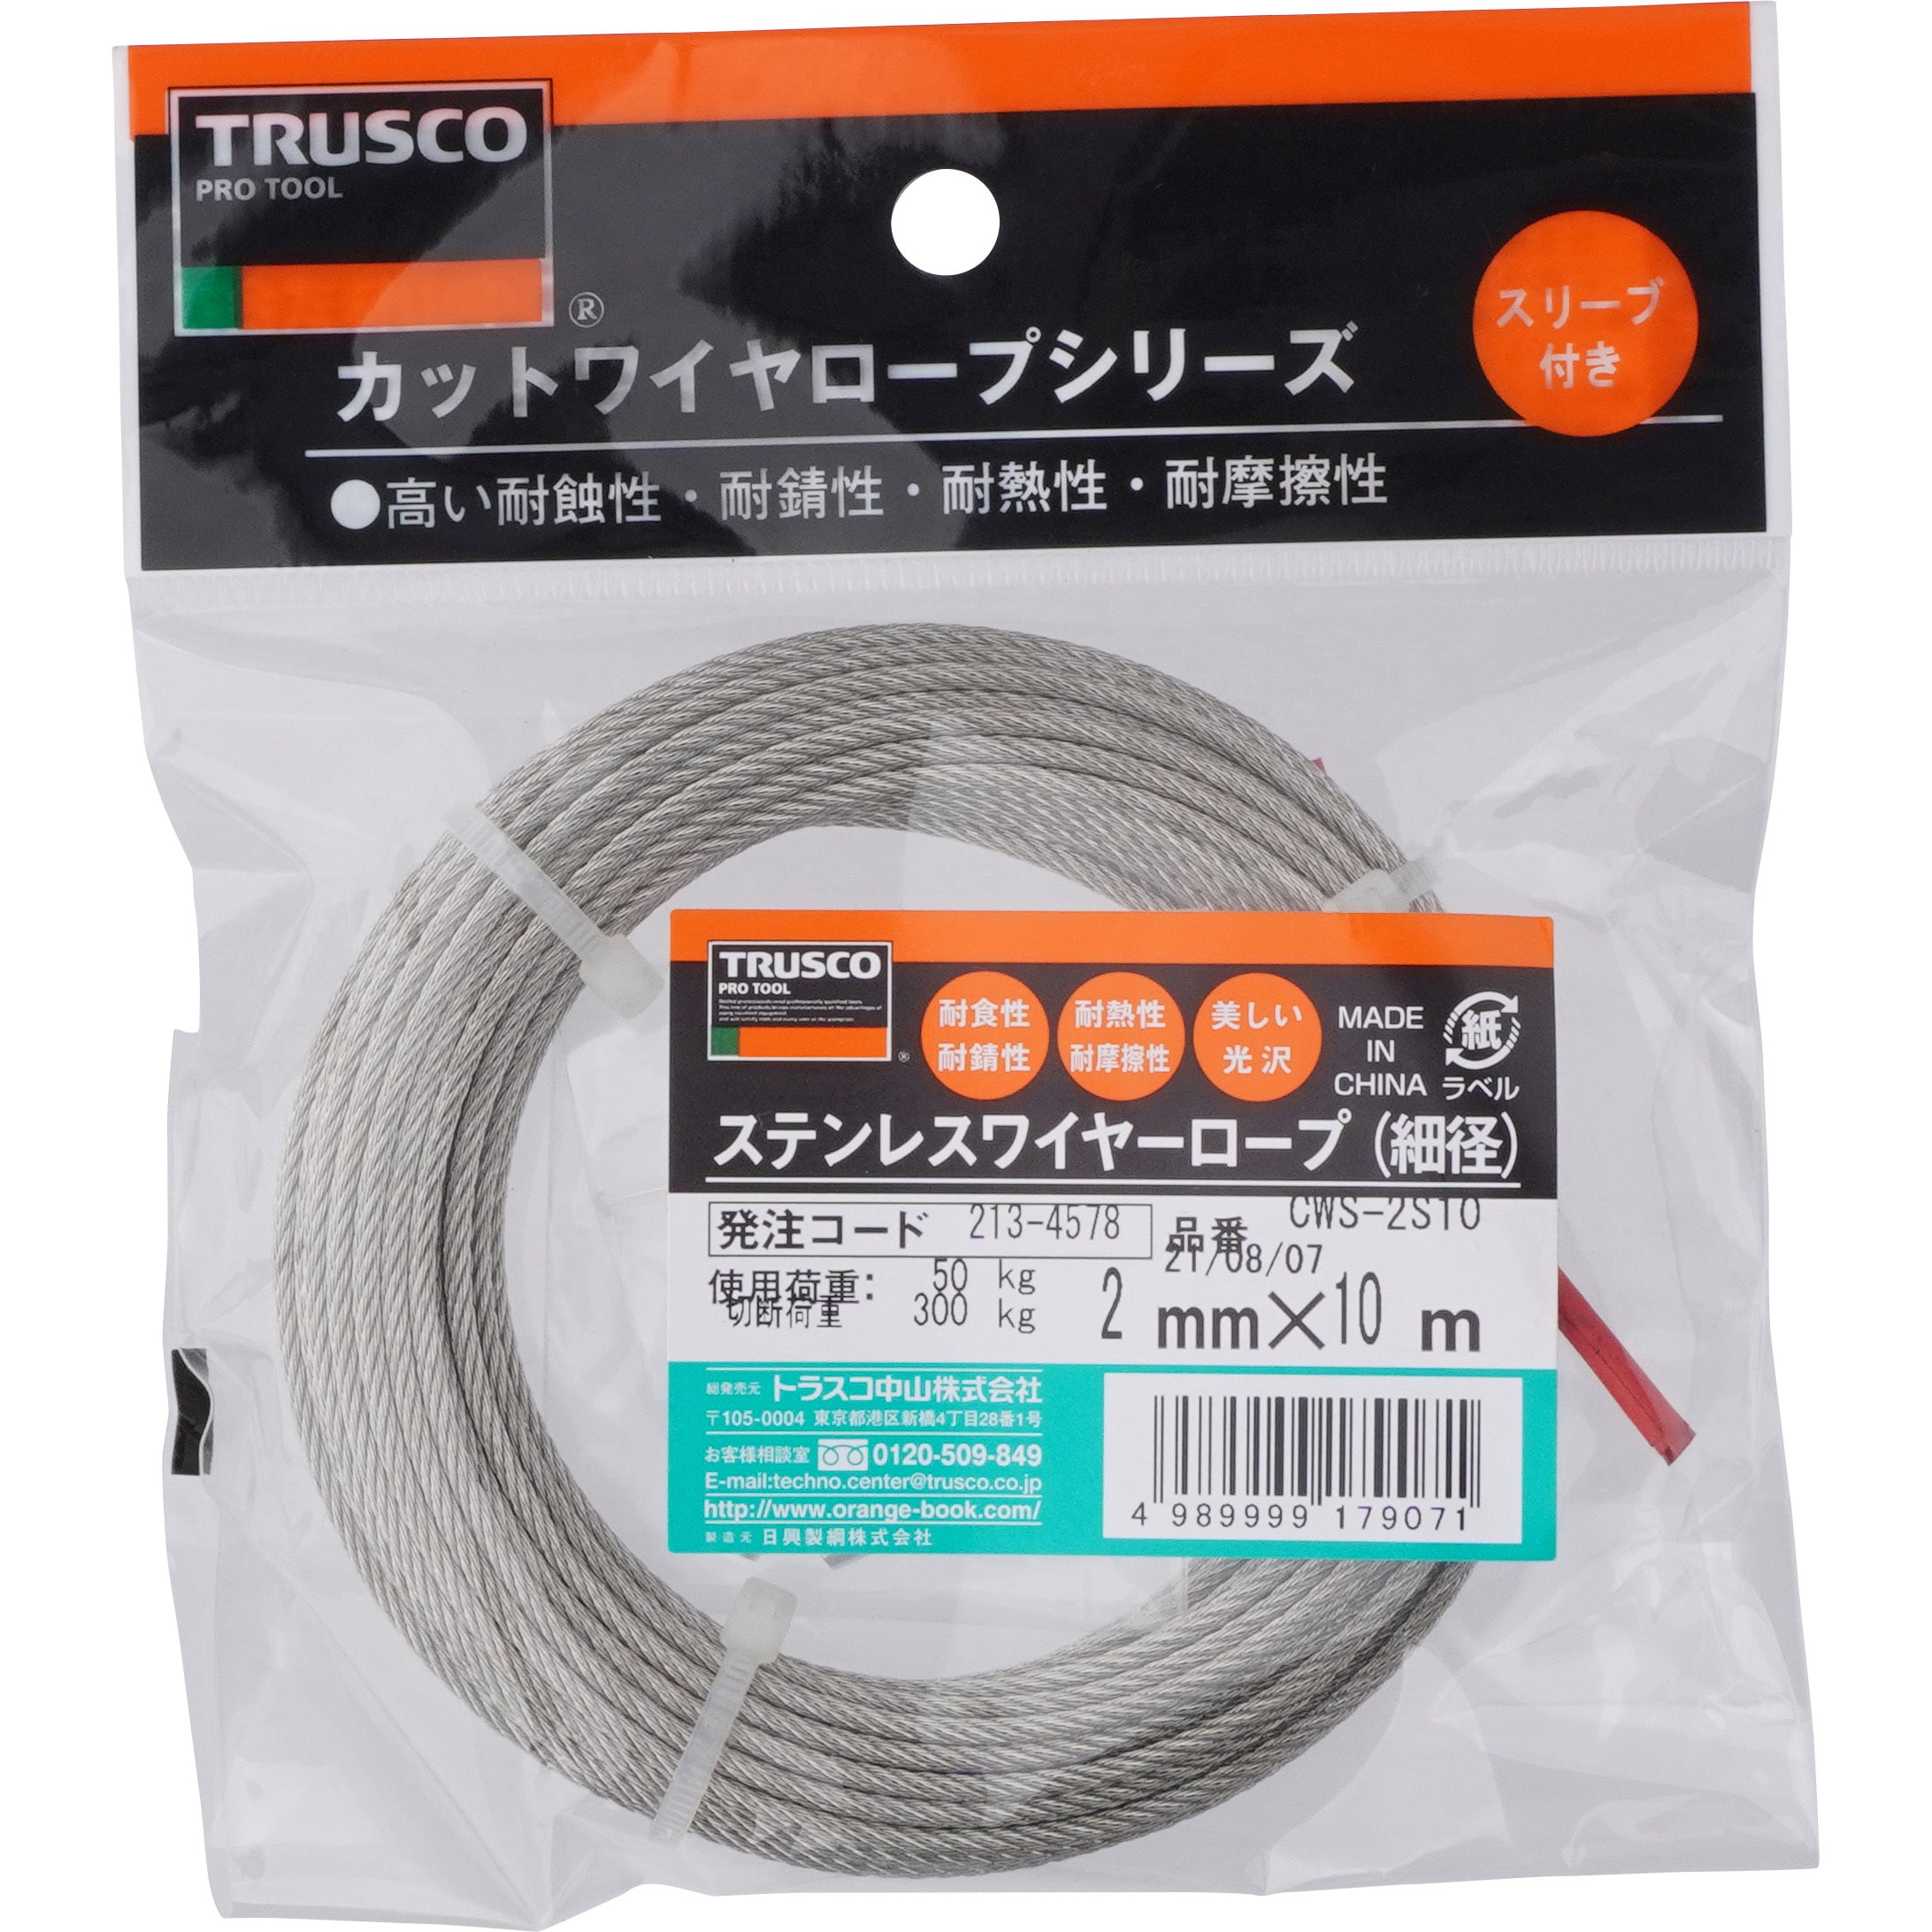 TRUSCO(トラスコ) ステンレスワイヤロープ Φ5.0mm×20m CWS-5S20 - 金物